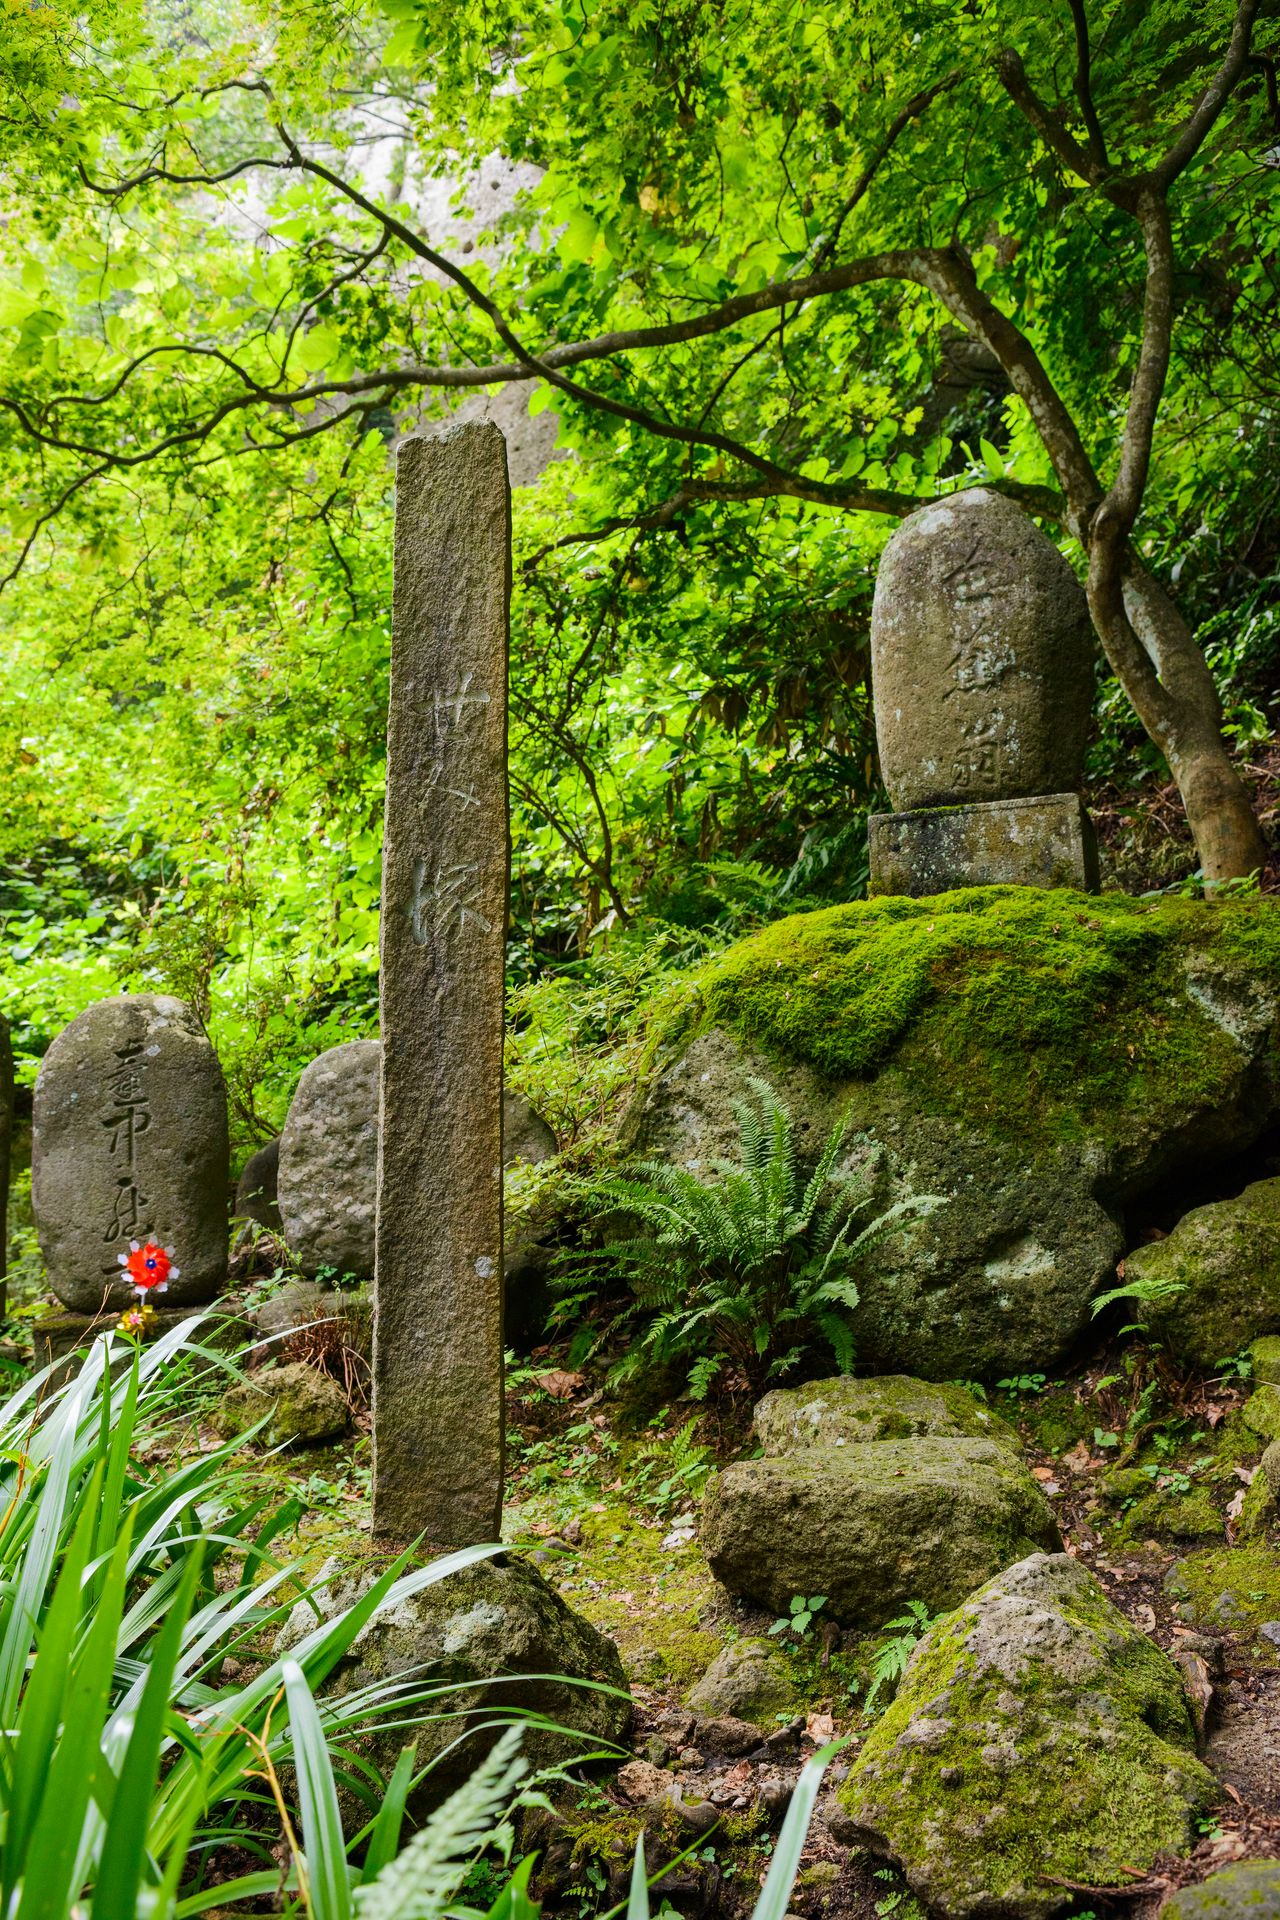 نصب سيميزوكا التذكاري الحجري يشير إلى المكان الذين سافر عبره باشو في أحد الأوقات (الصورة بإذن من جمعية السياحة في ياماغاتا).